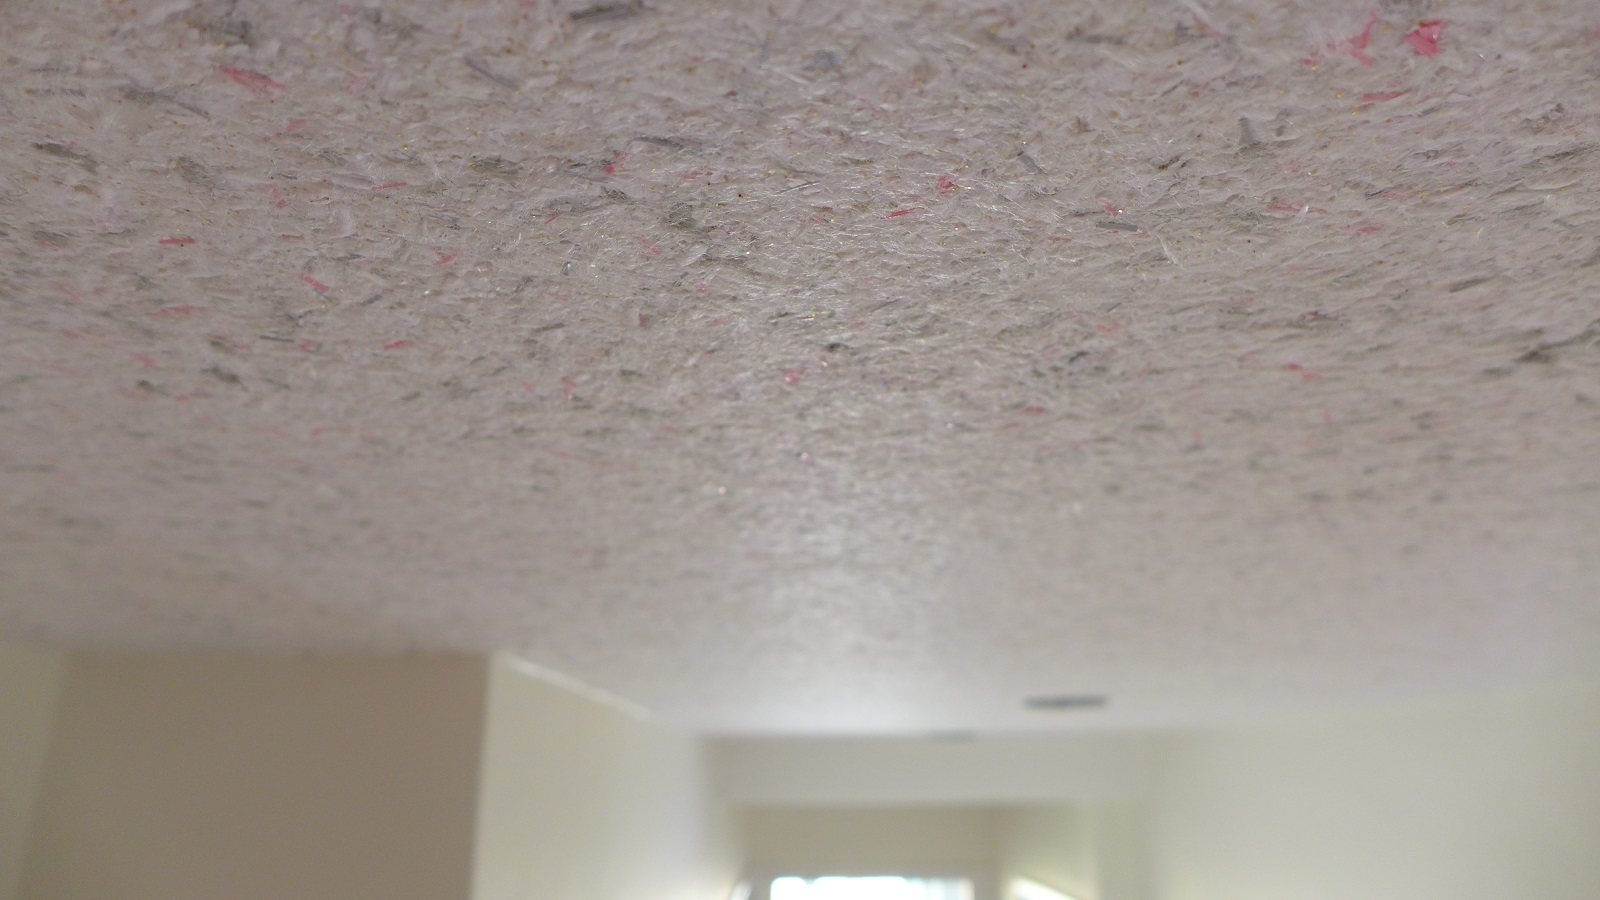 Cotton Plaster ceiling 3